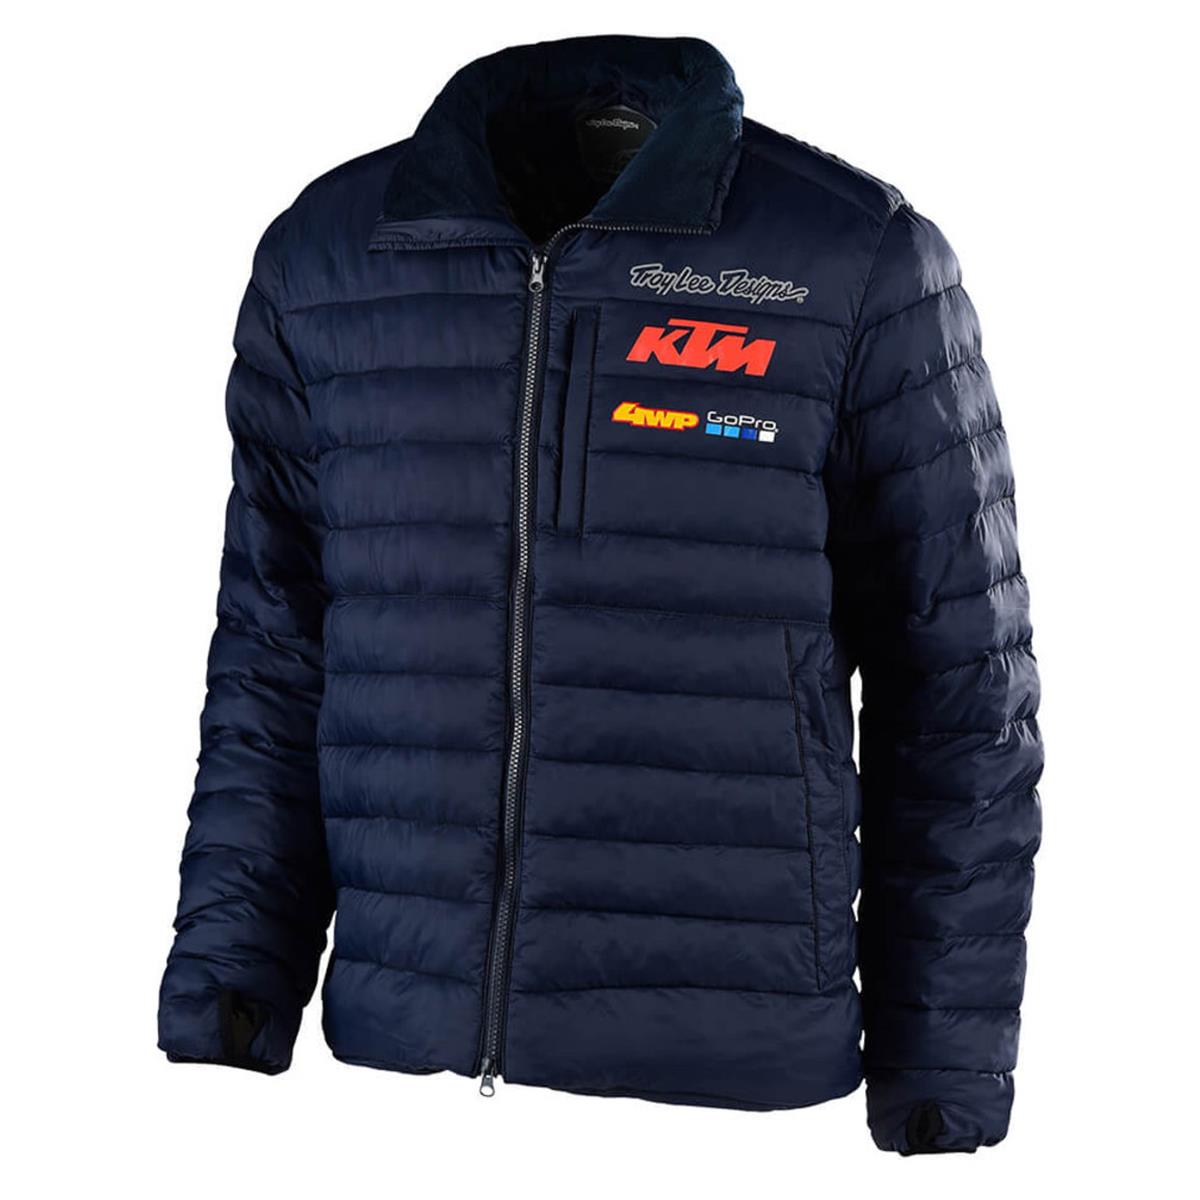 Troy Lee Designs Winter Jacket KTM Team Navy